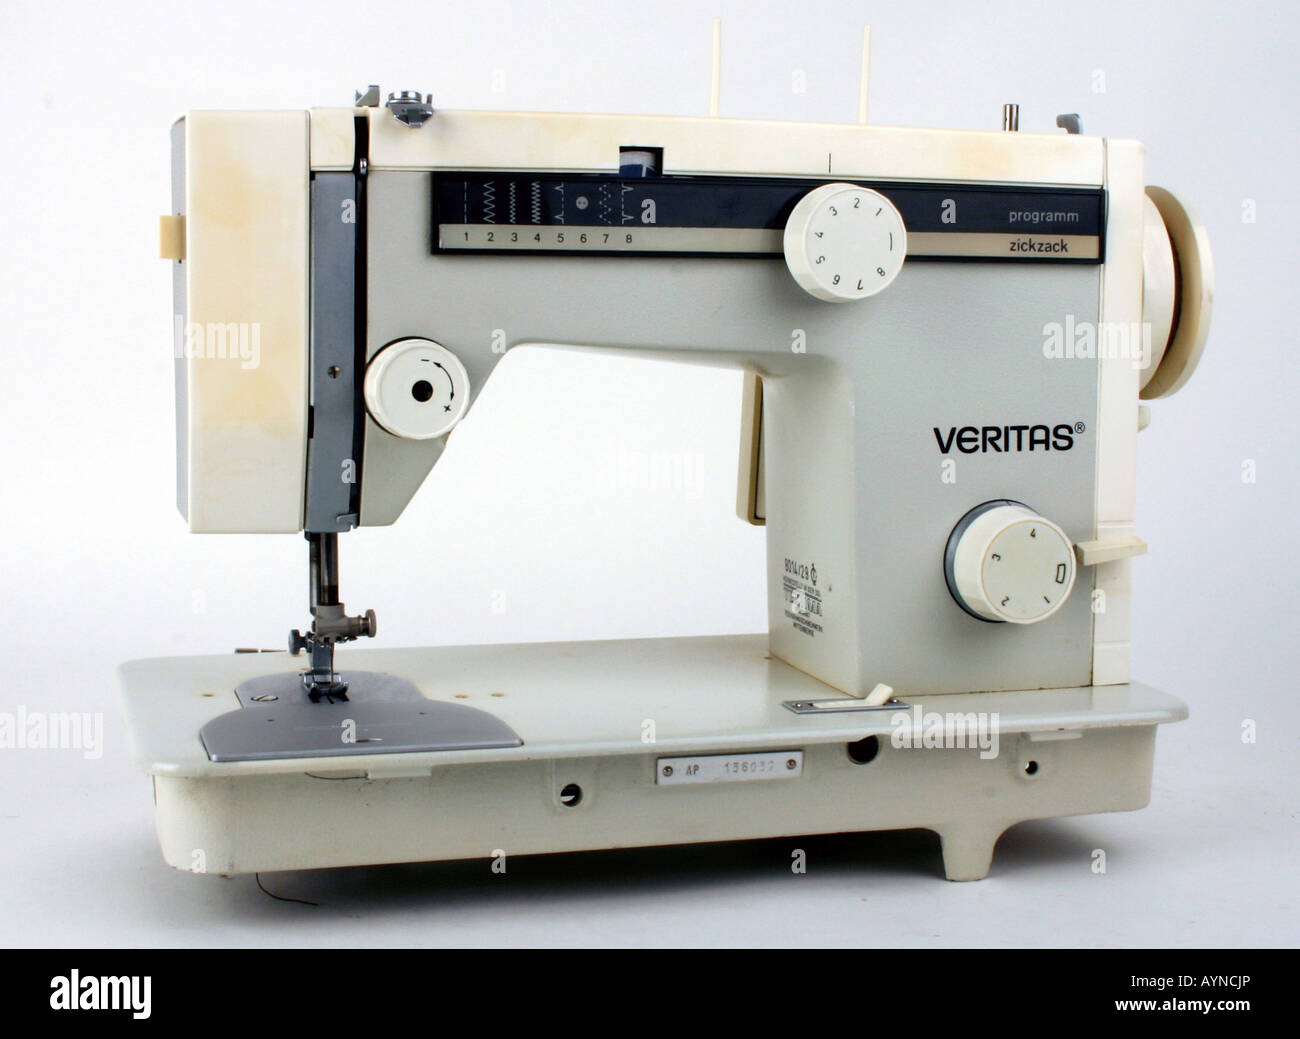 Haushalt, Haushaltsgeräte, elektrische Nähmaschine Veritas 8014/29, produziert vom Kombinat Textilma Naehmaschinenwerk Wittenberge, DDR, 1970er Jahre, Stockfoto